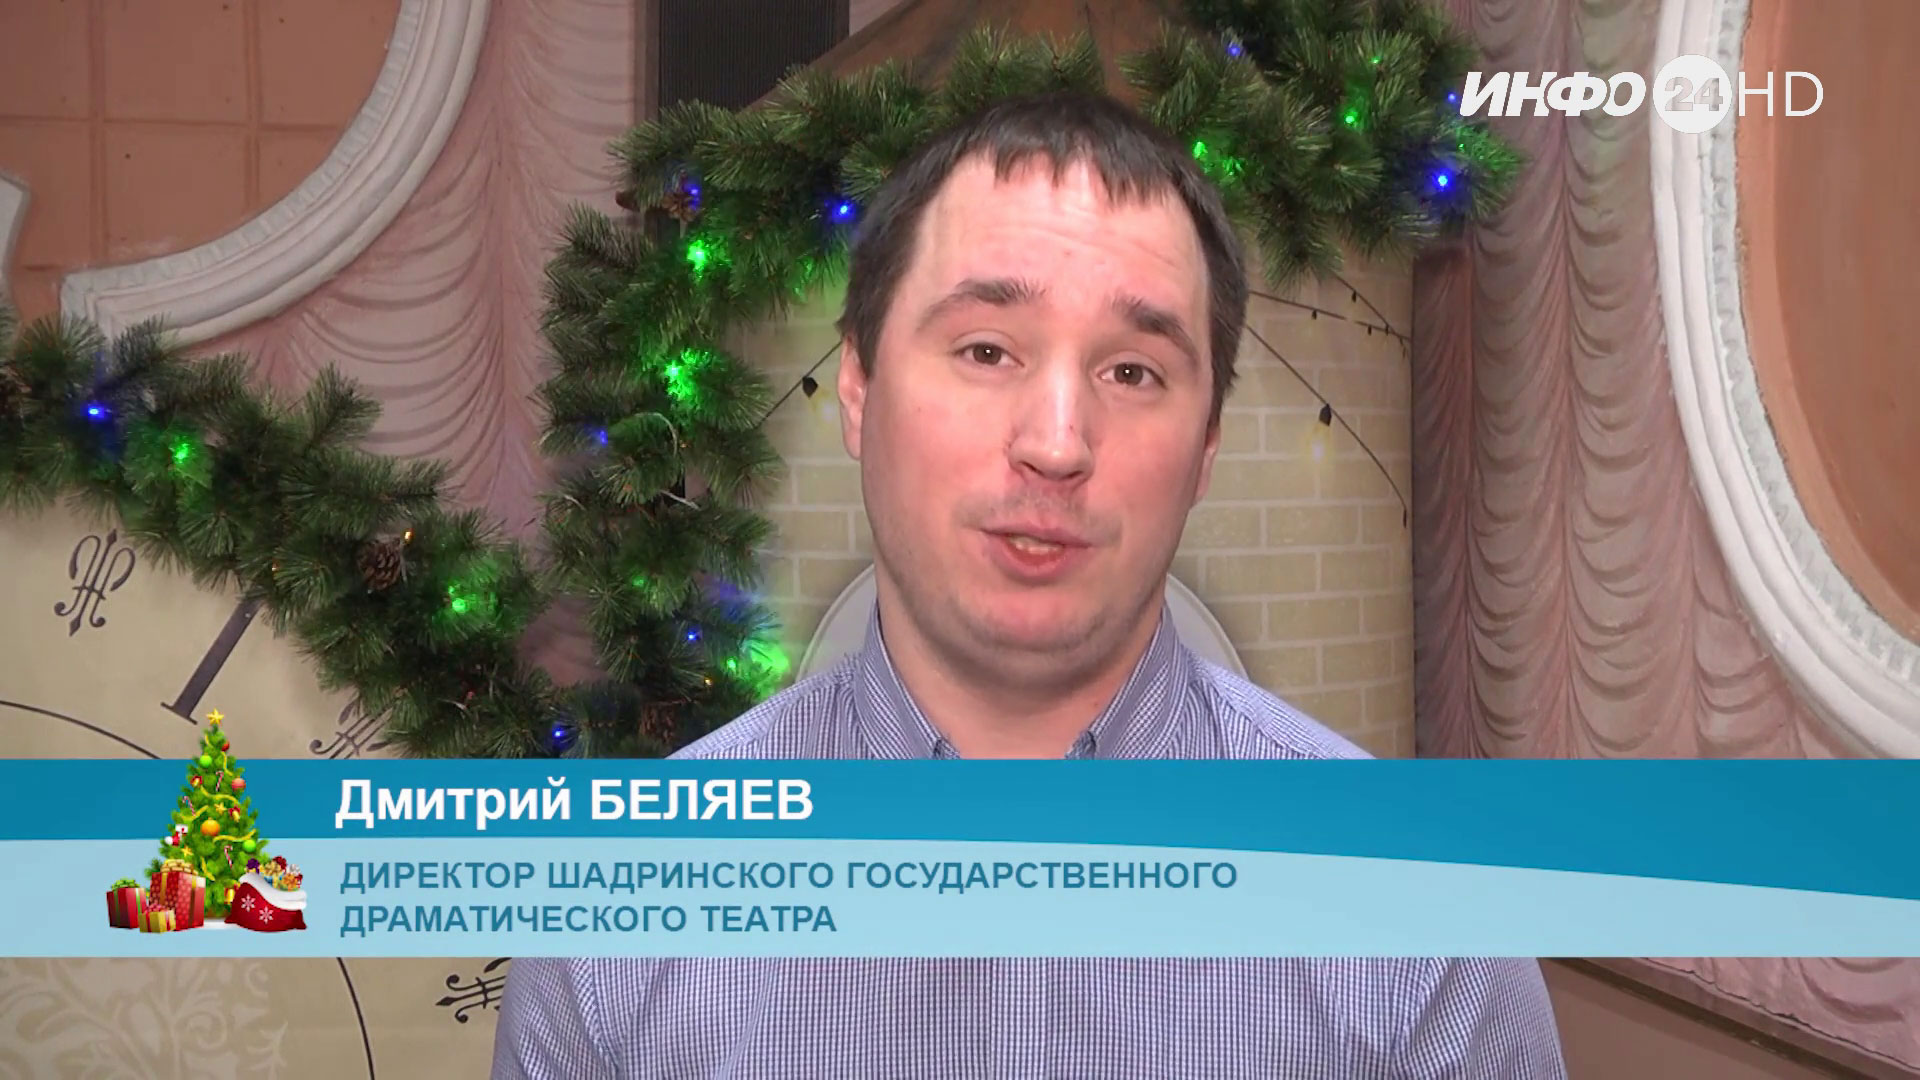 Новогоднее поздравление - 2022. Дмитрий Беляев, директор ШГДТ